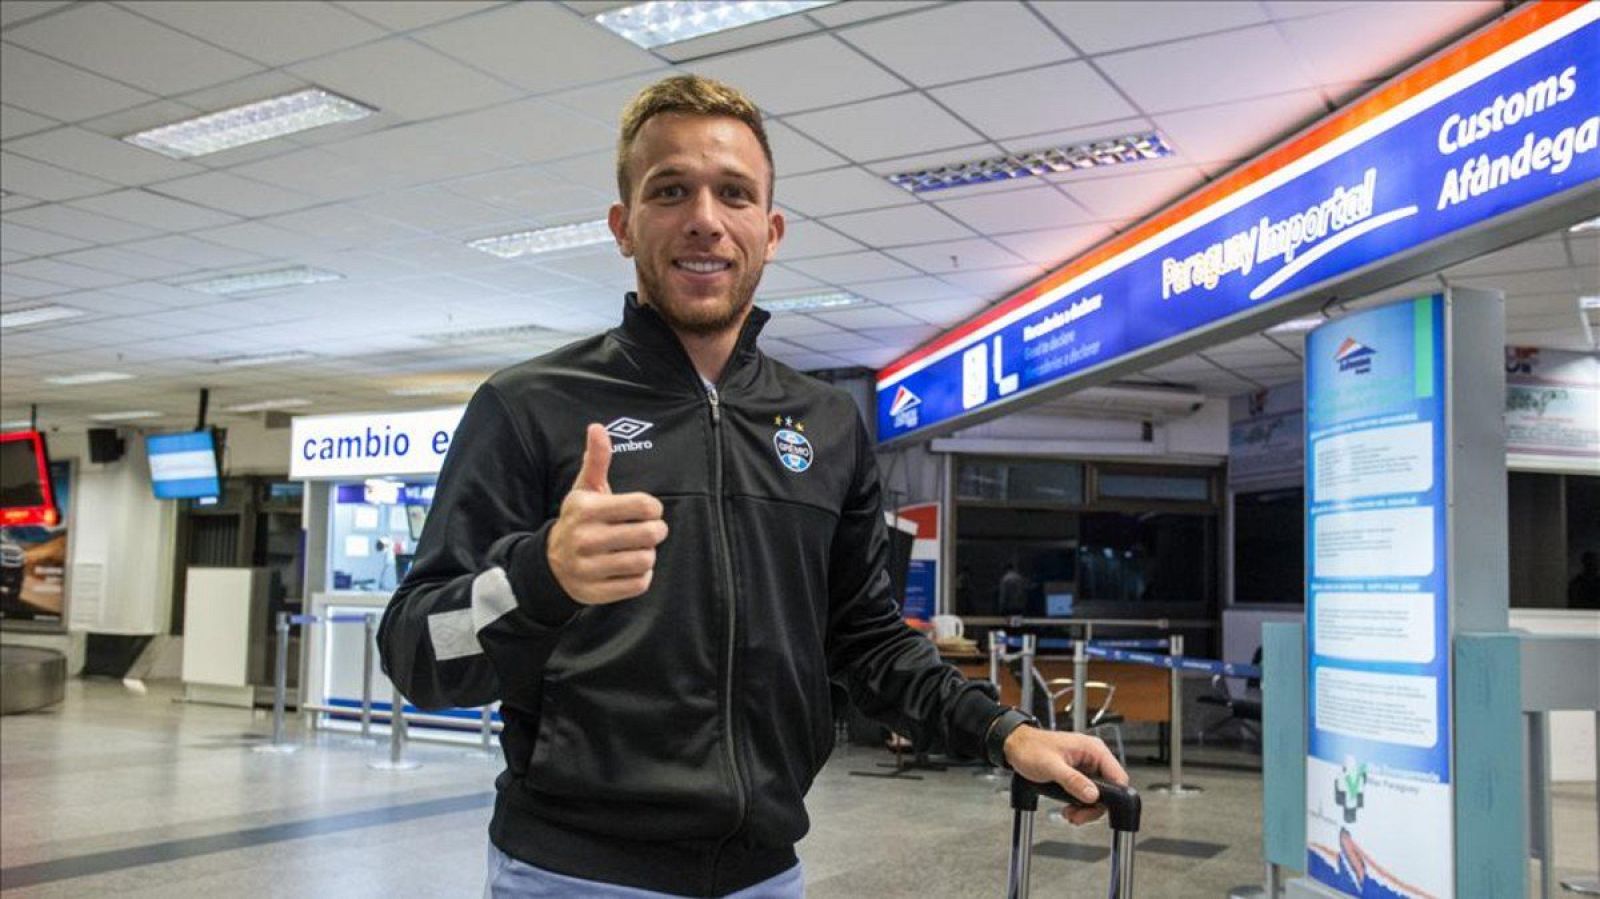 Imagen del centrocampista brasileño Arthur en el aeropuerto.